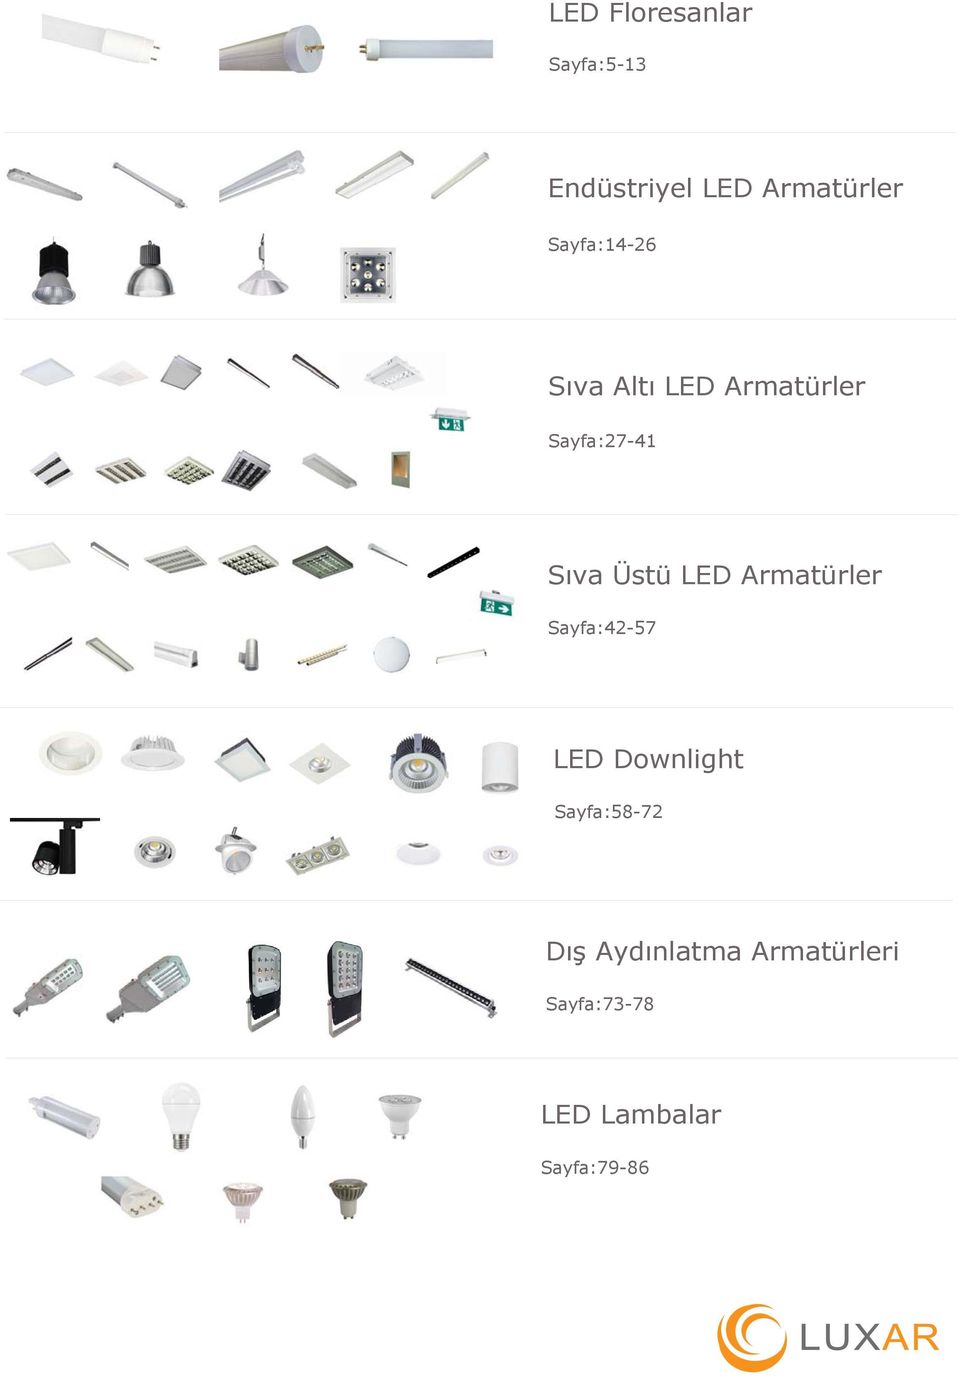 Üstü LED Armatürler Sayfa:42-57 LED Downlight Sayfa:58-72